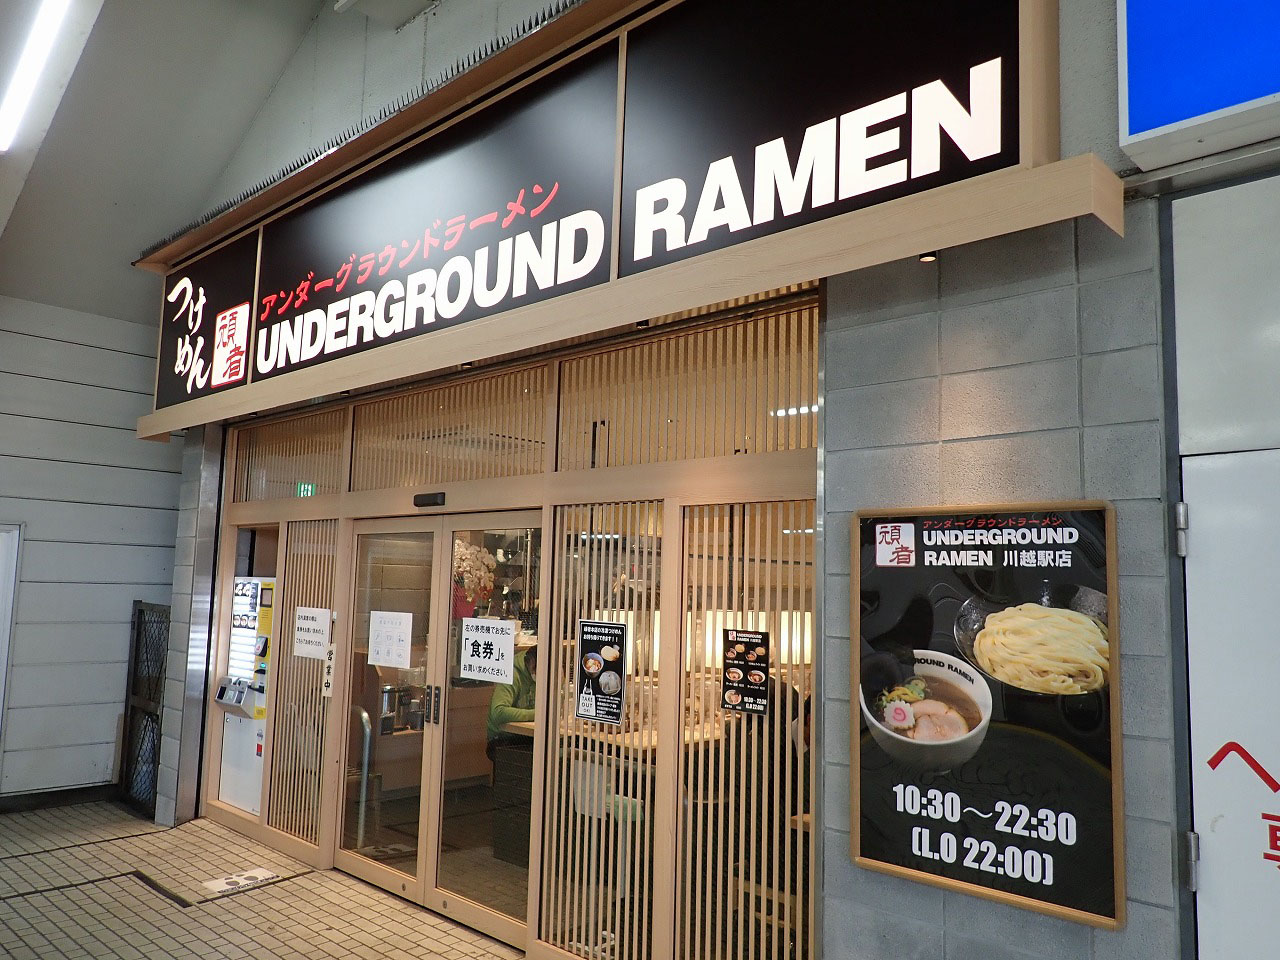 川越駅のホームにある『UNDERGROUND RAMEN 川越駅店』